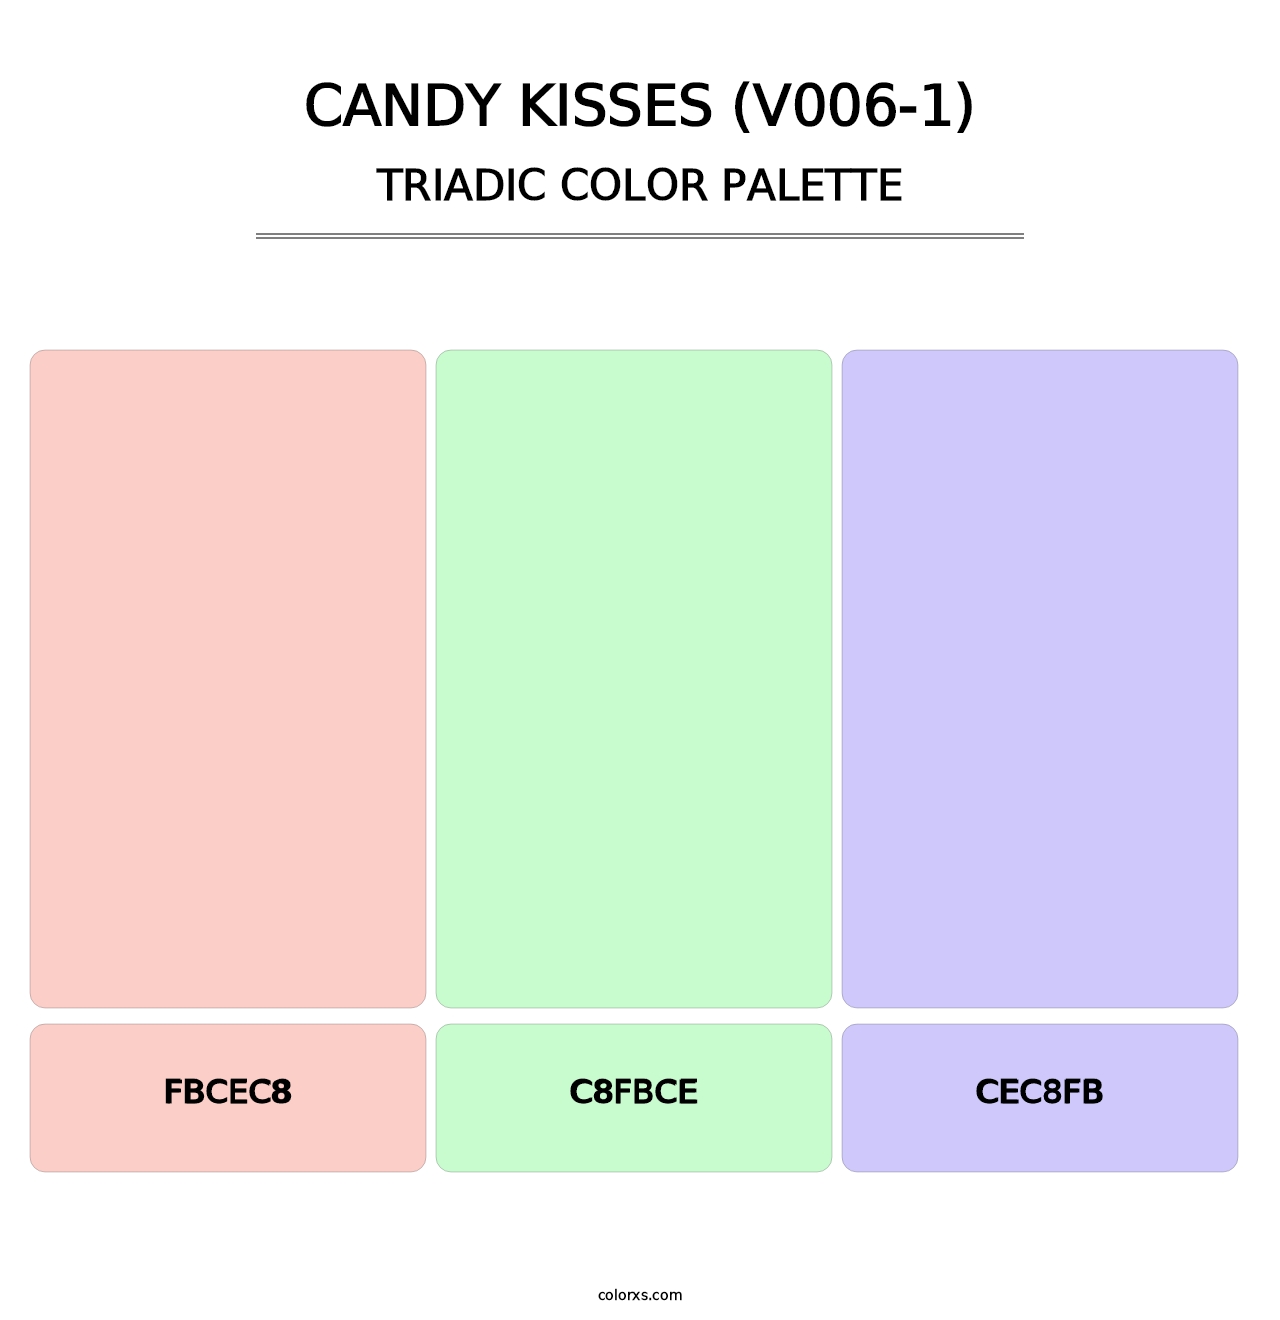 Candy Kisses (V006-1) - Triadic Color Palette